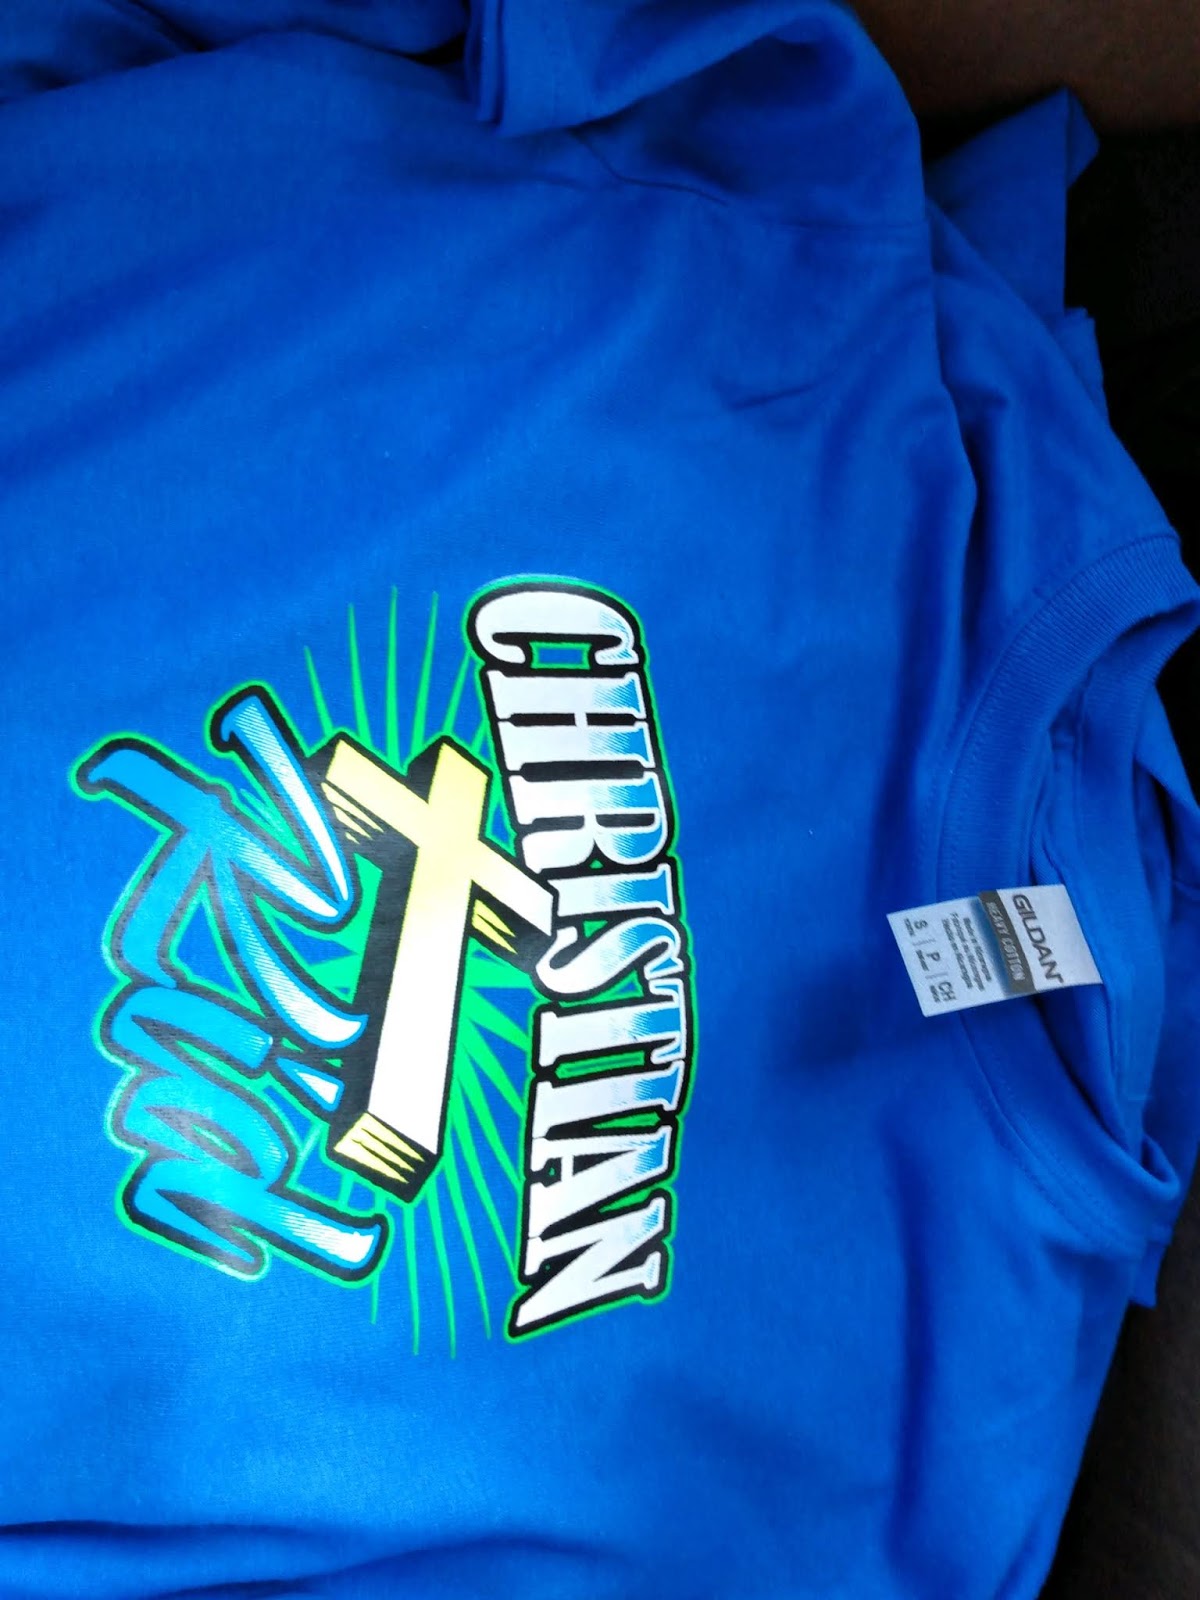 Buy Christian apprel T shirt Christian Kid: Order3 01